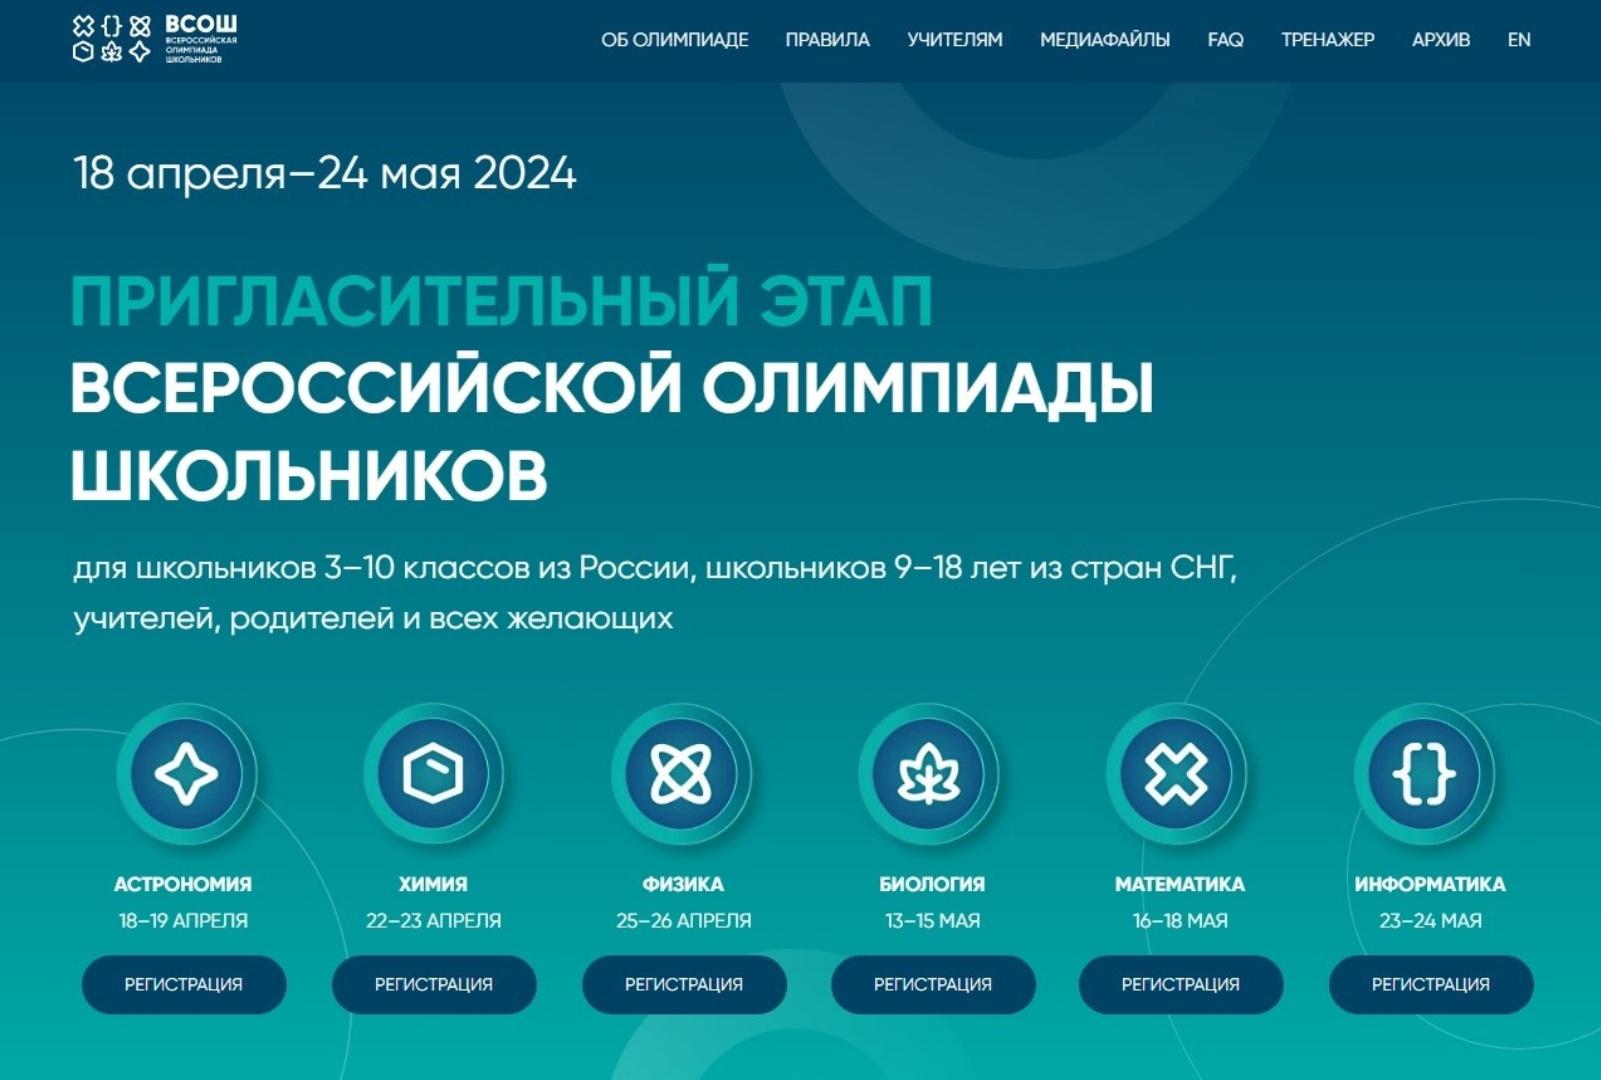 Регламент проведения пригласительного этапа всероссийской олимпиады школьников 2024.